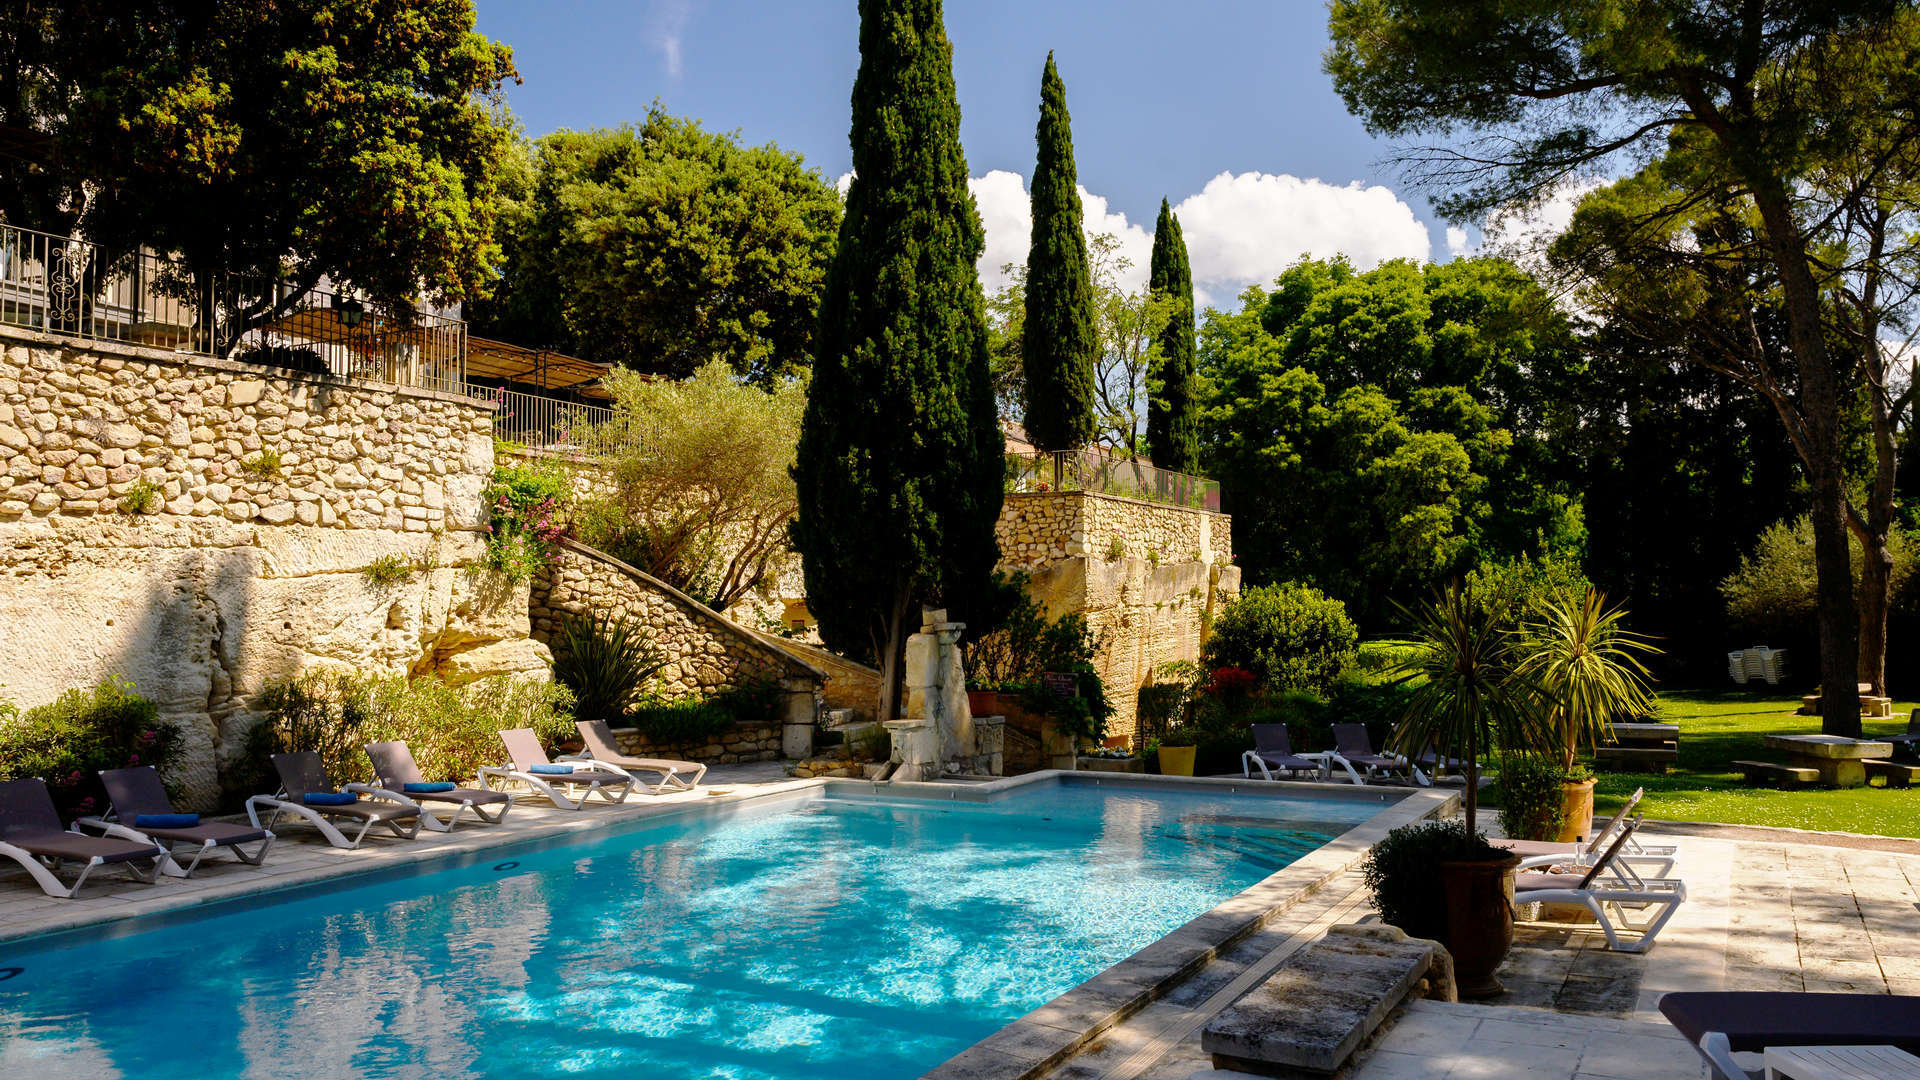 Vue de profil sur la piscine et son environnement qui l'entoure - Hôtel Fontvieille, Le Belesso